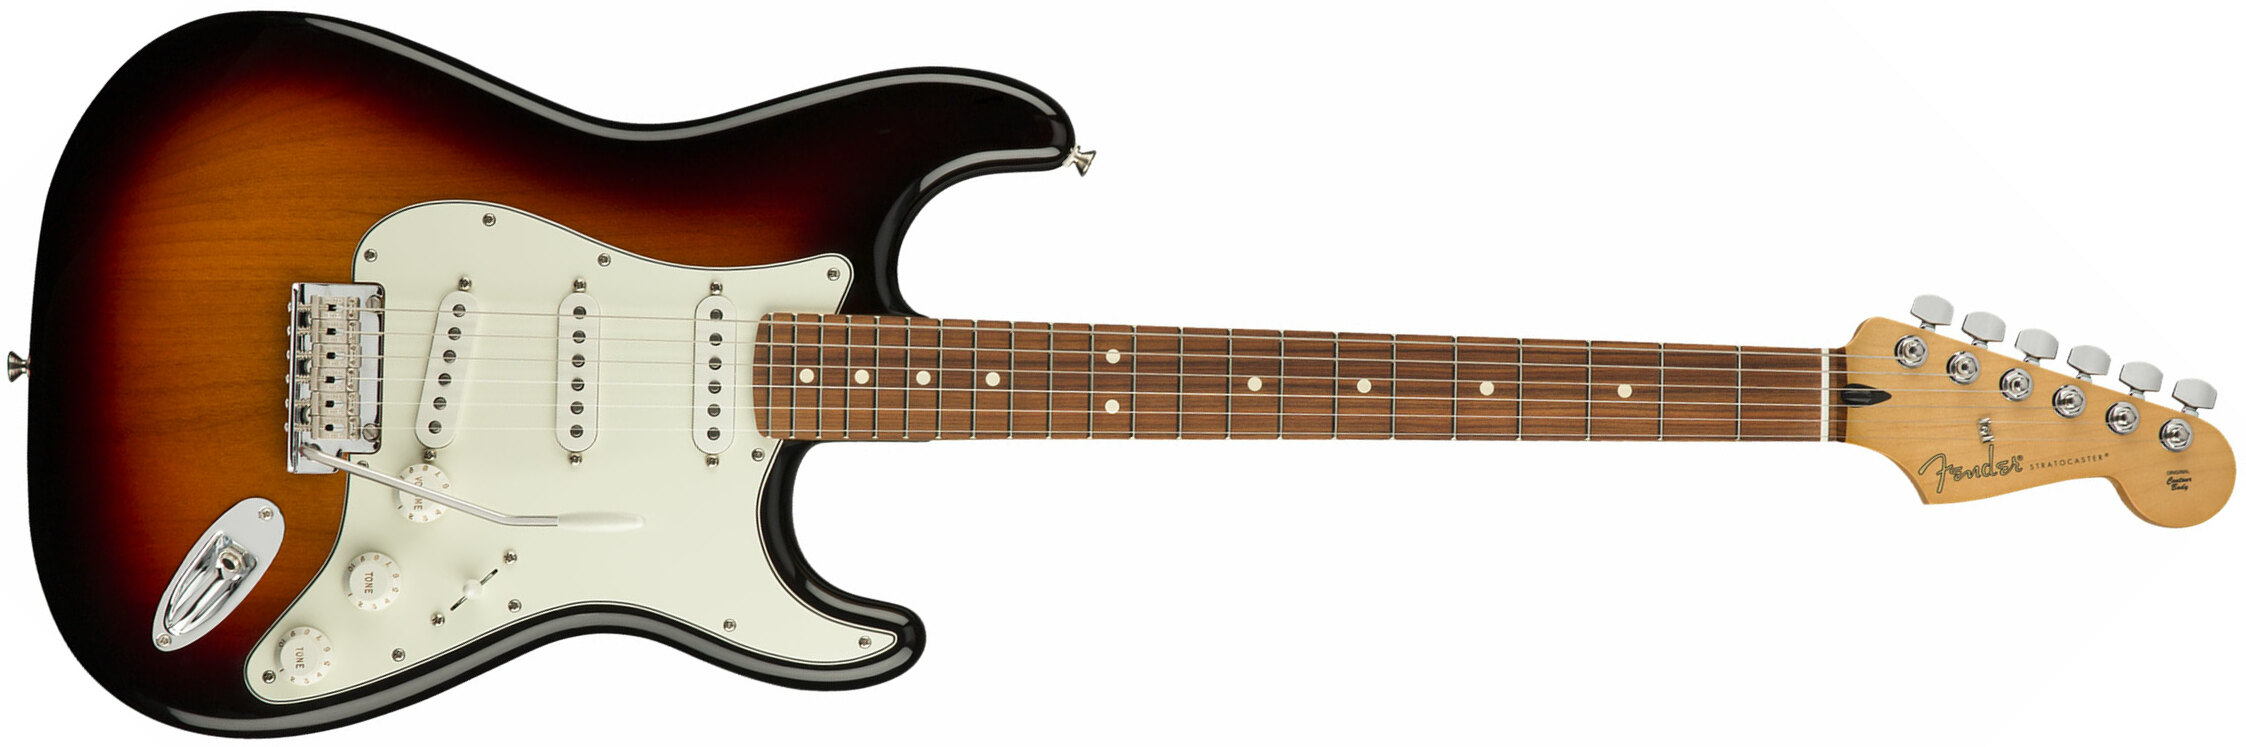 Fender Strat Player Mex Sss Pf - 3-color Sunburst - Elektrische gitaar in Str-vorm - Main picture